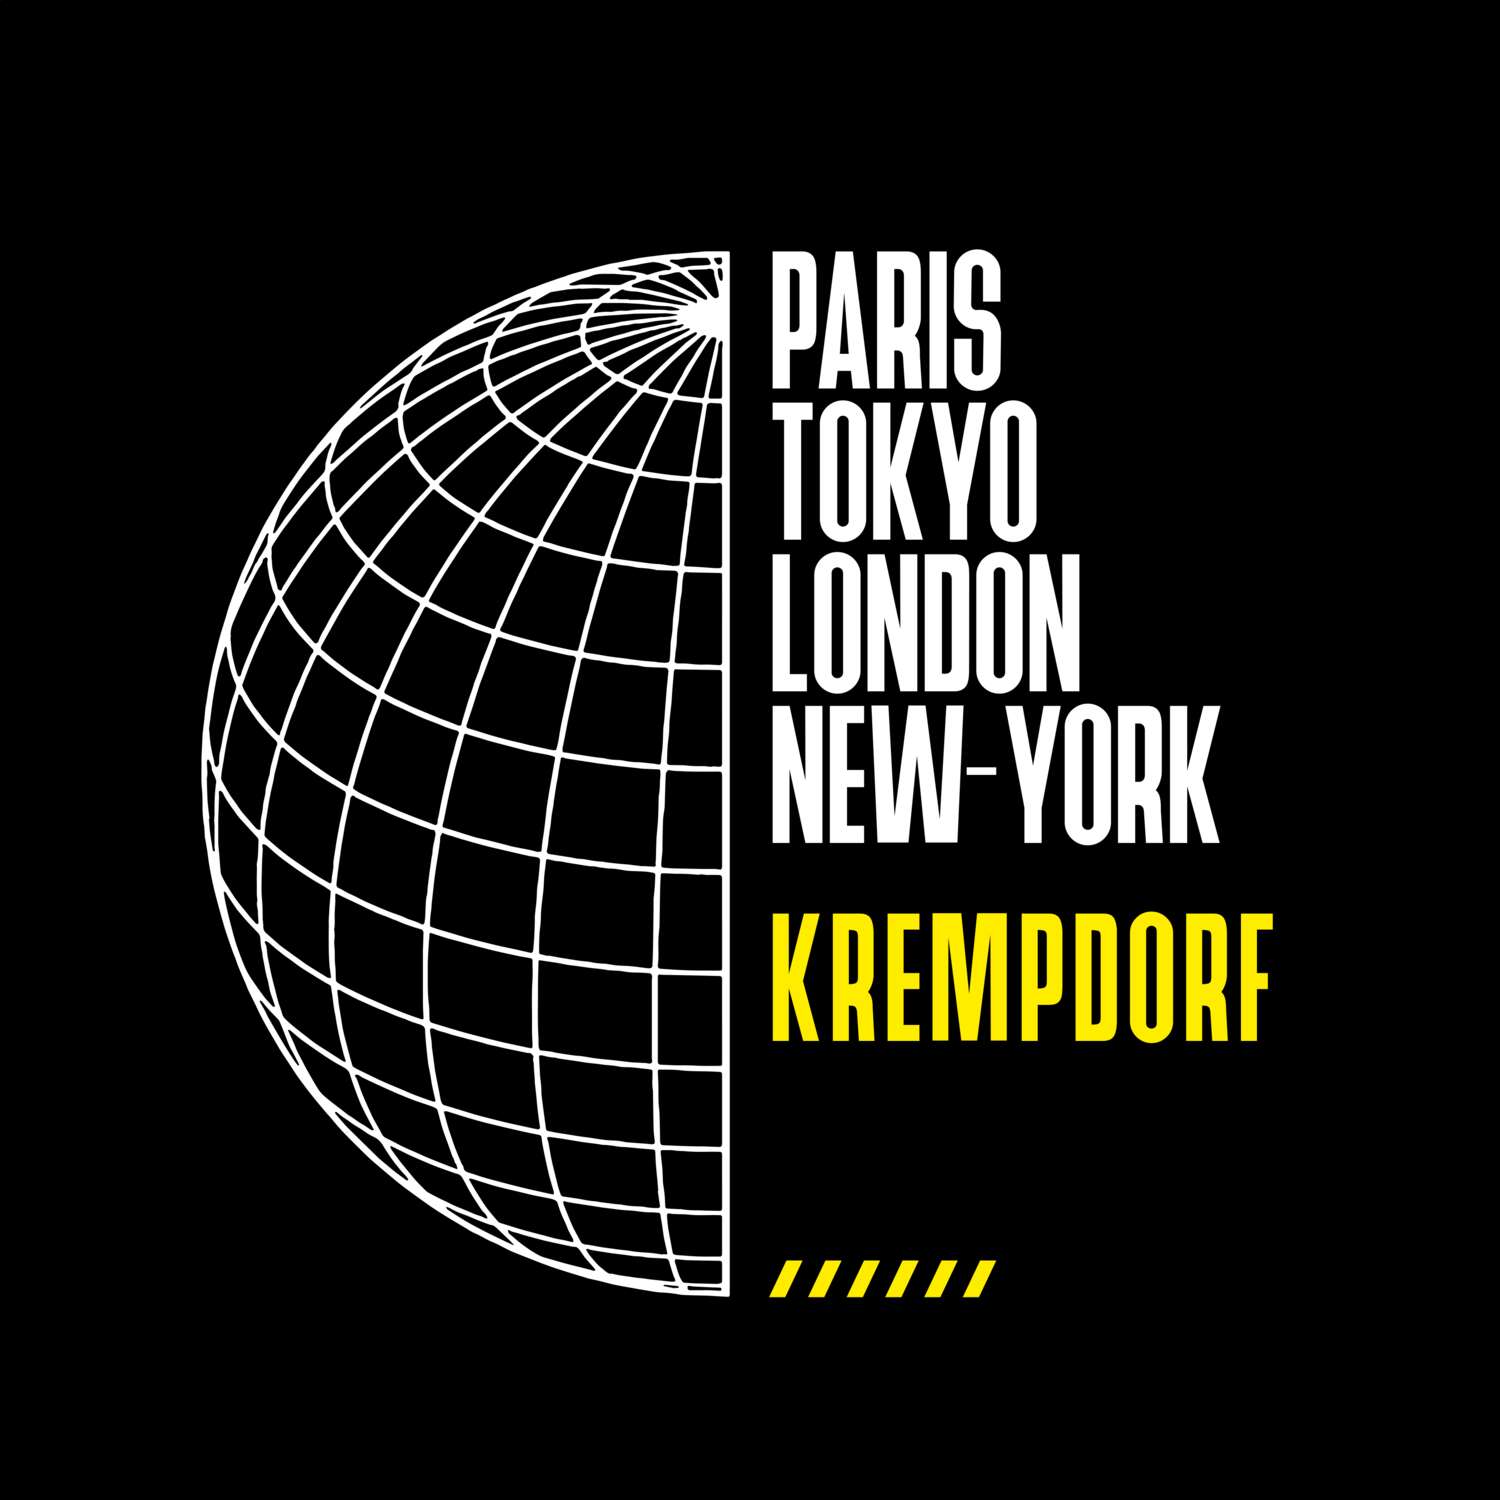 Krempdorf T-Shirt »Paris Tokyo London«